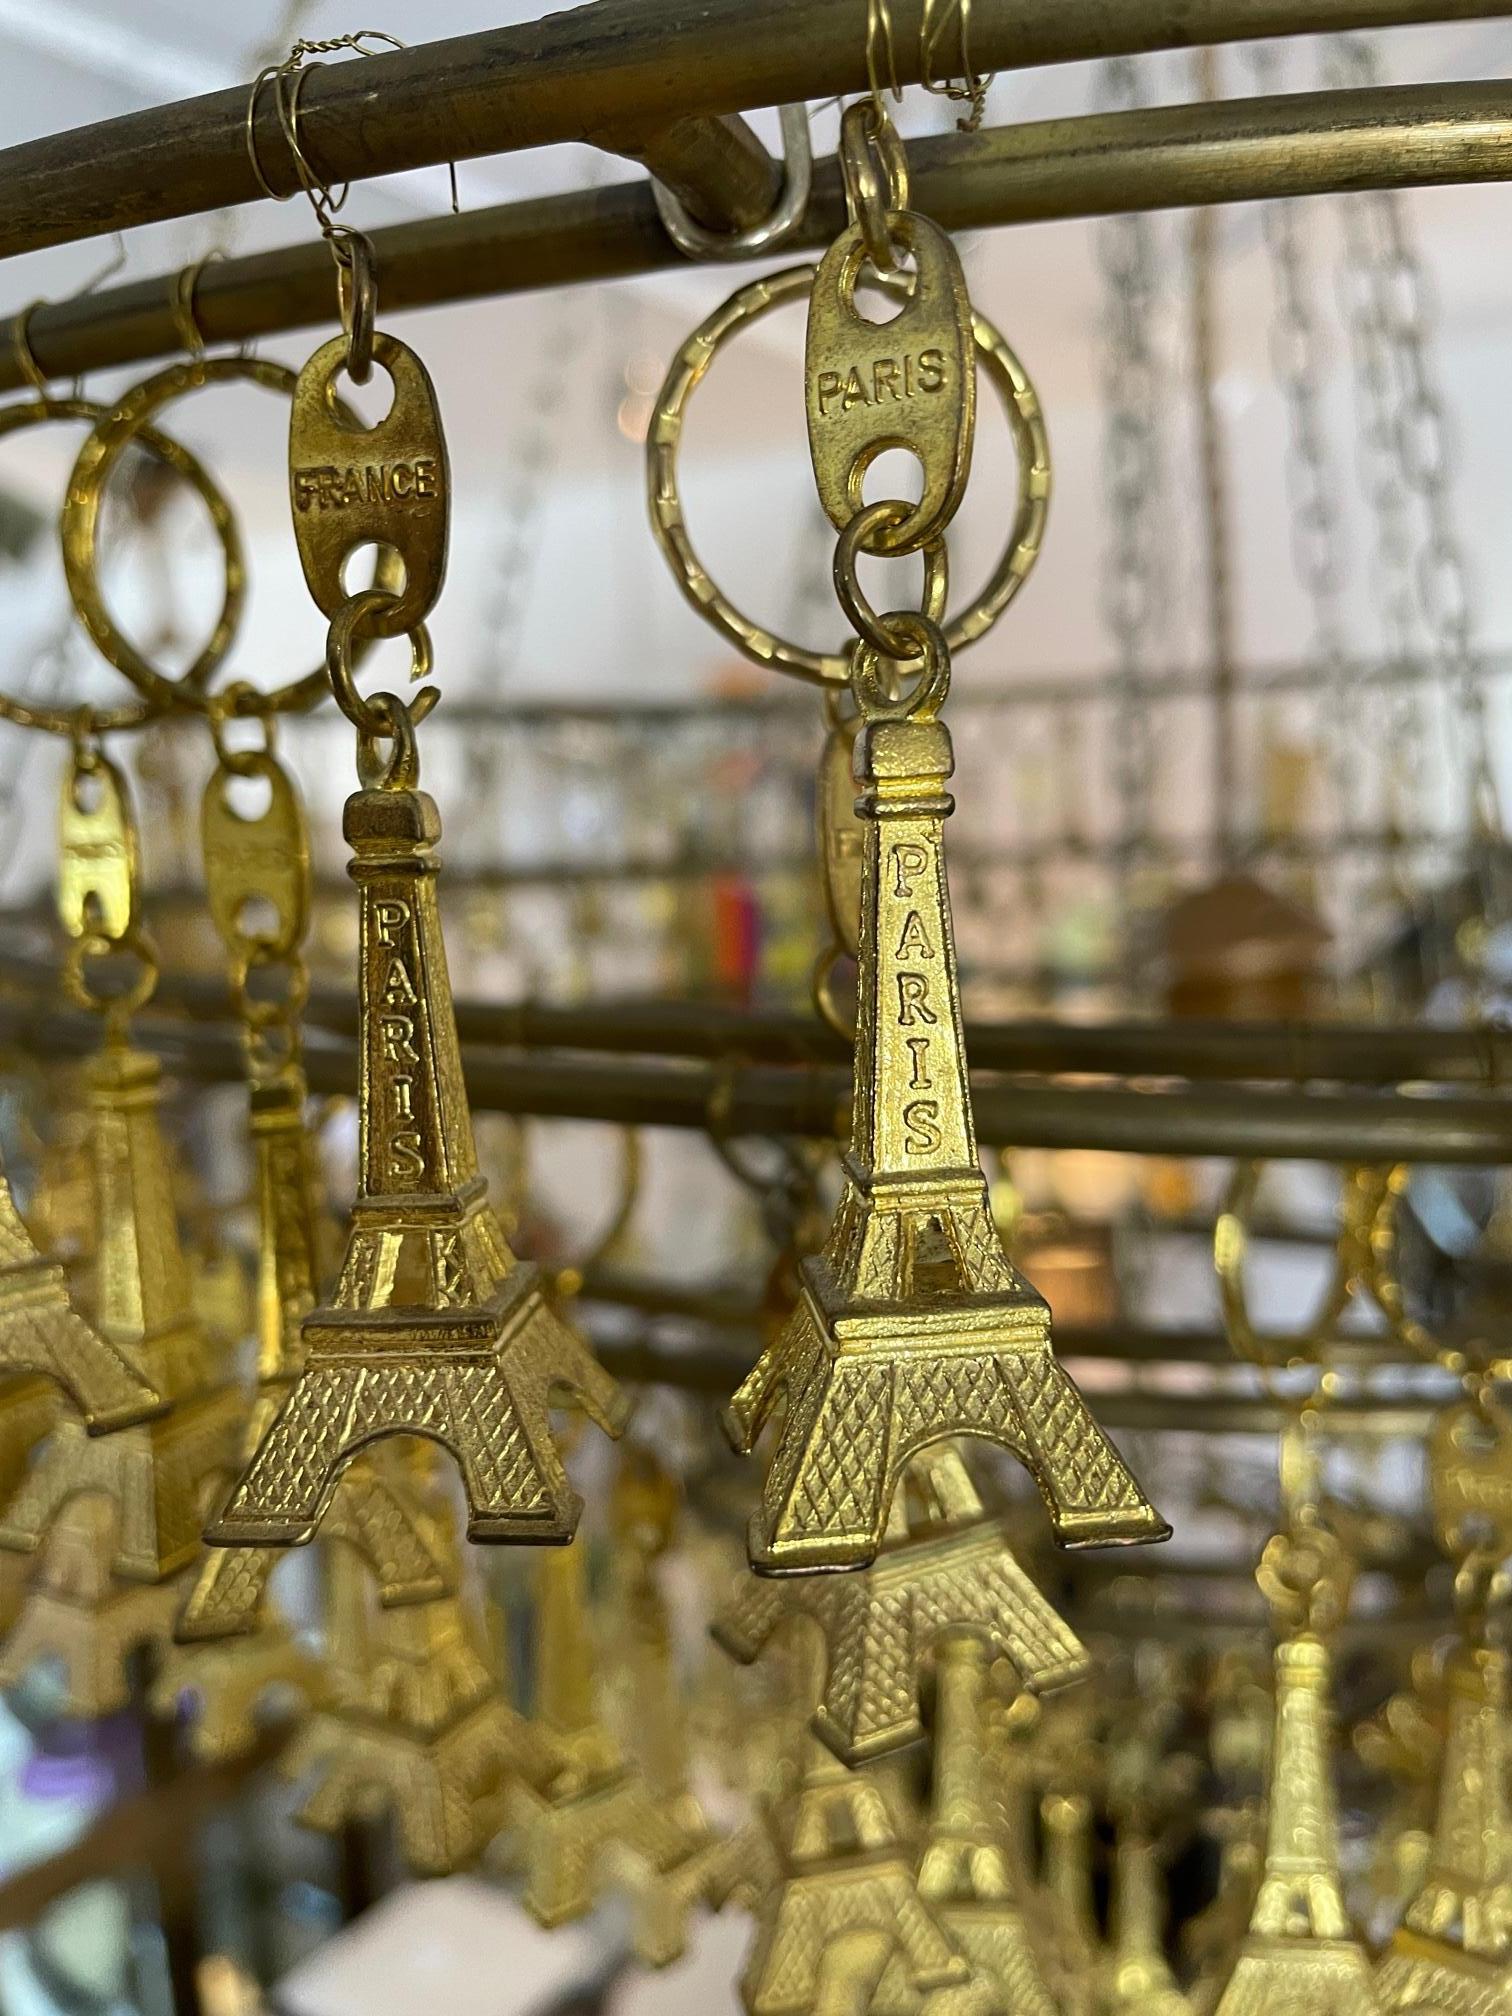 Dieser stilvolle und schicke Kunsthandwerker-Kronleuchter wird durch die Verwendung von Schlüsselanhängern mit Eiffelturm-Anhängern als Verzierung zu einem echten Hingucker. 

Hinweis: Benötigt eine Edison-Glühbirne.

Hinweis: Der Körper des